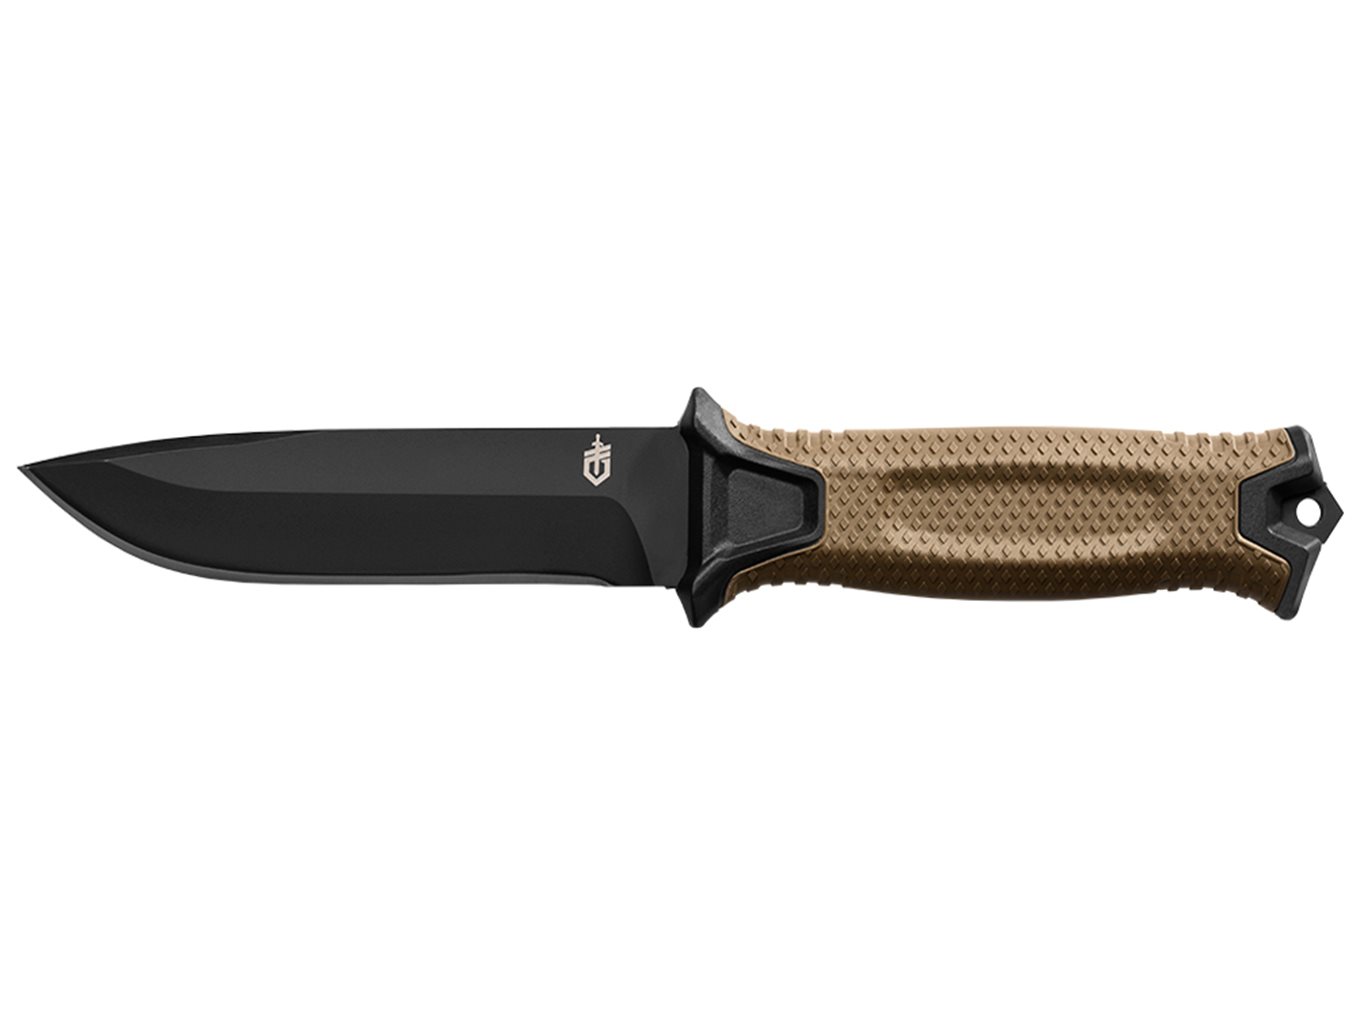 Etablering Kejserlig chokolade Strongarm Fixed Blade fra Gerber - Gear Up - Køb den her